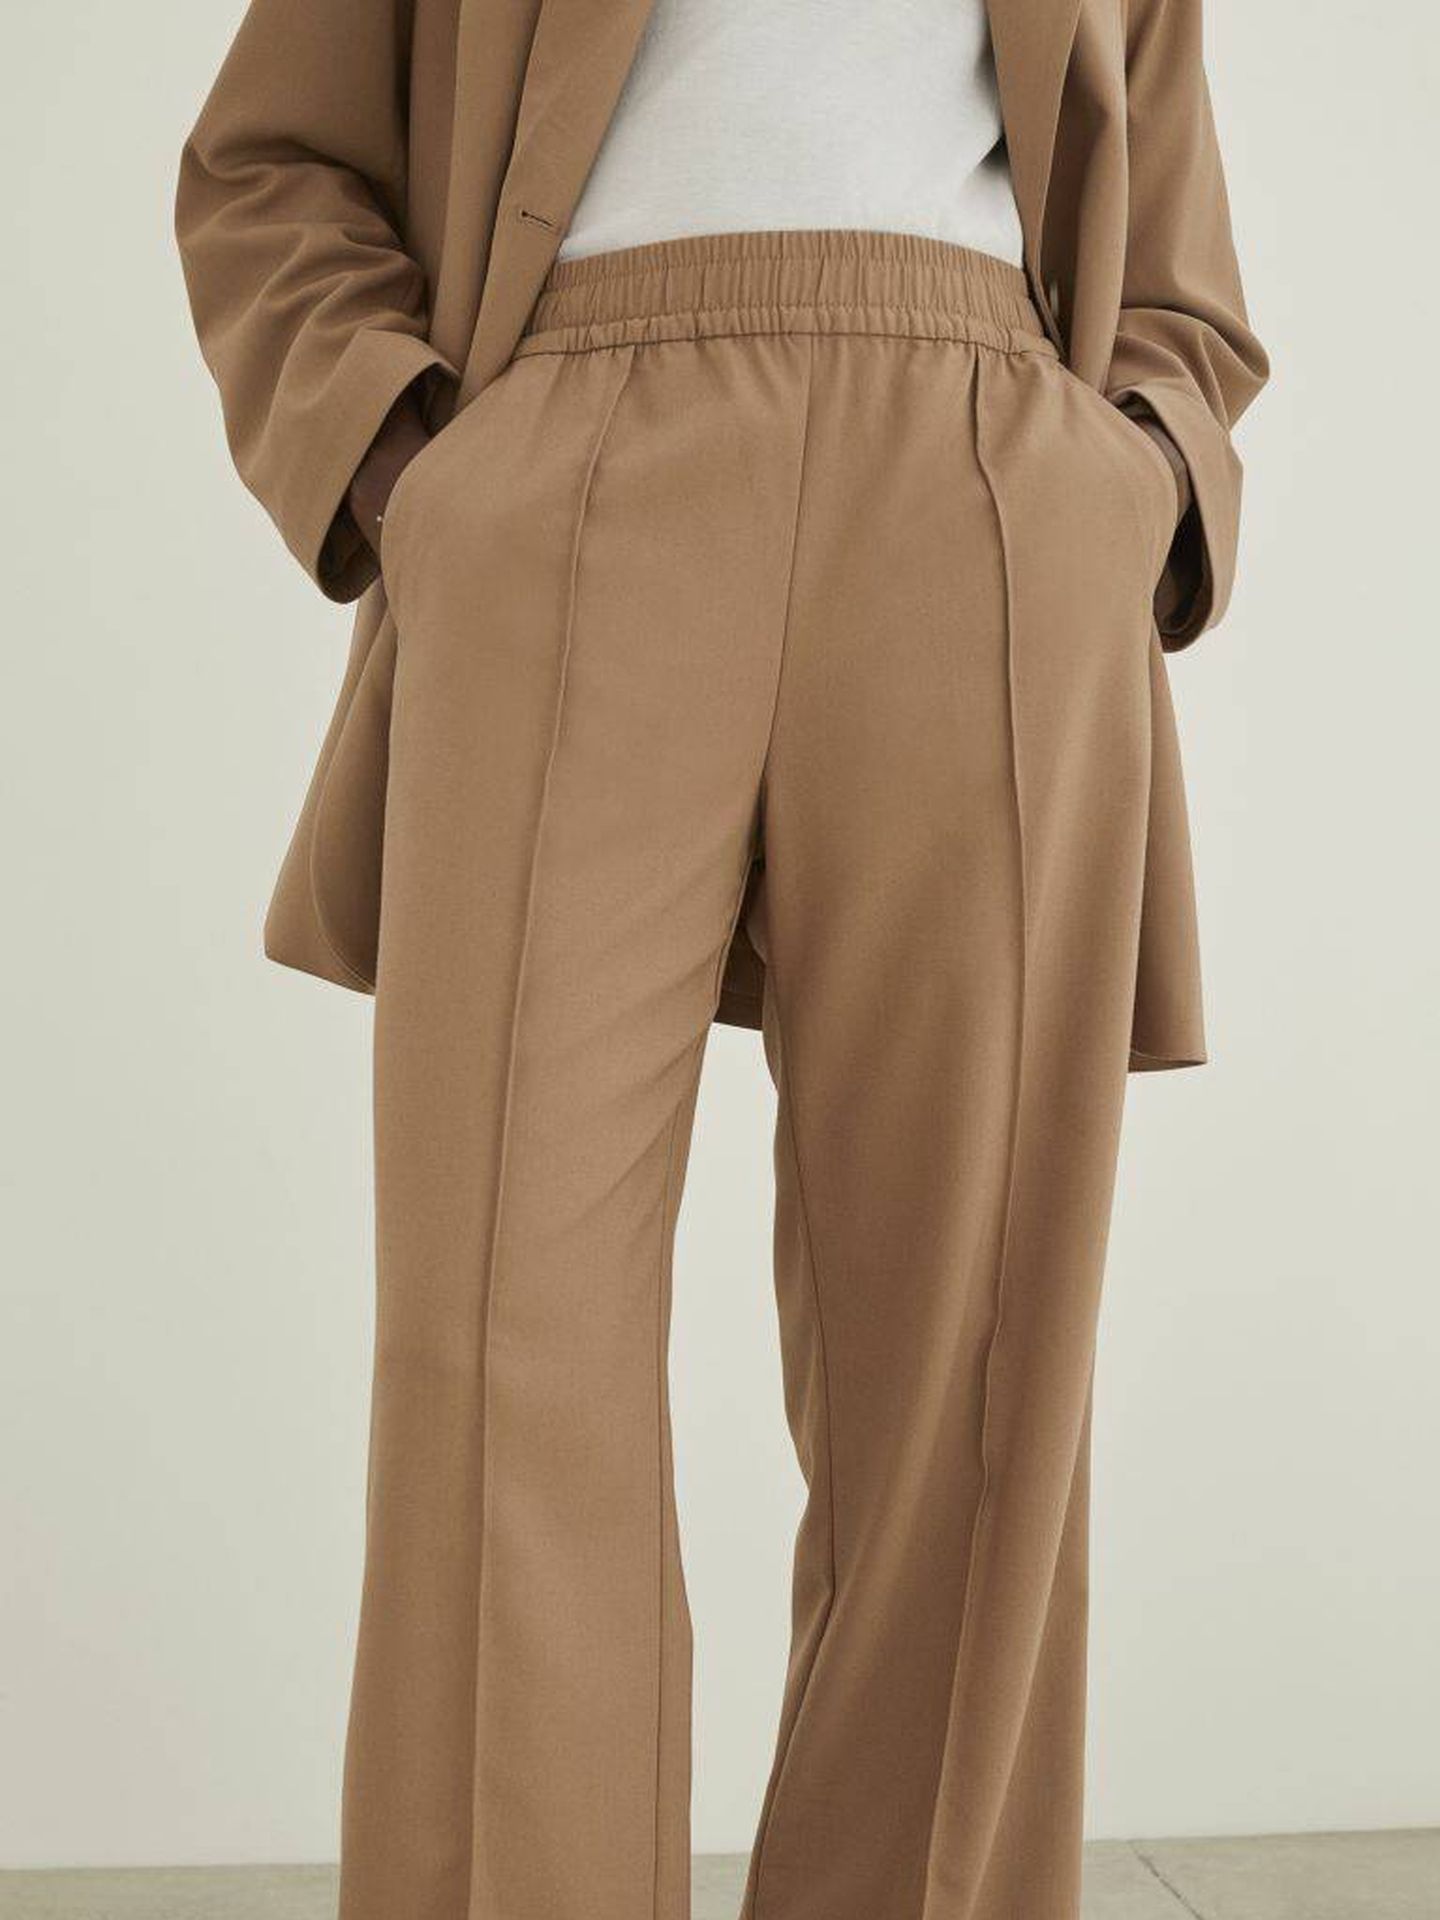 Elegante, cómodo y trendy: H&M reinventa el pantalón sastre clásico